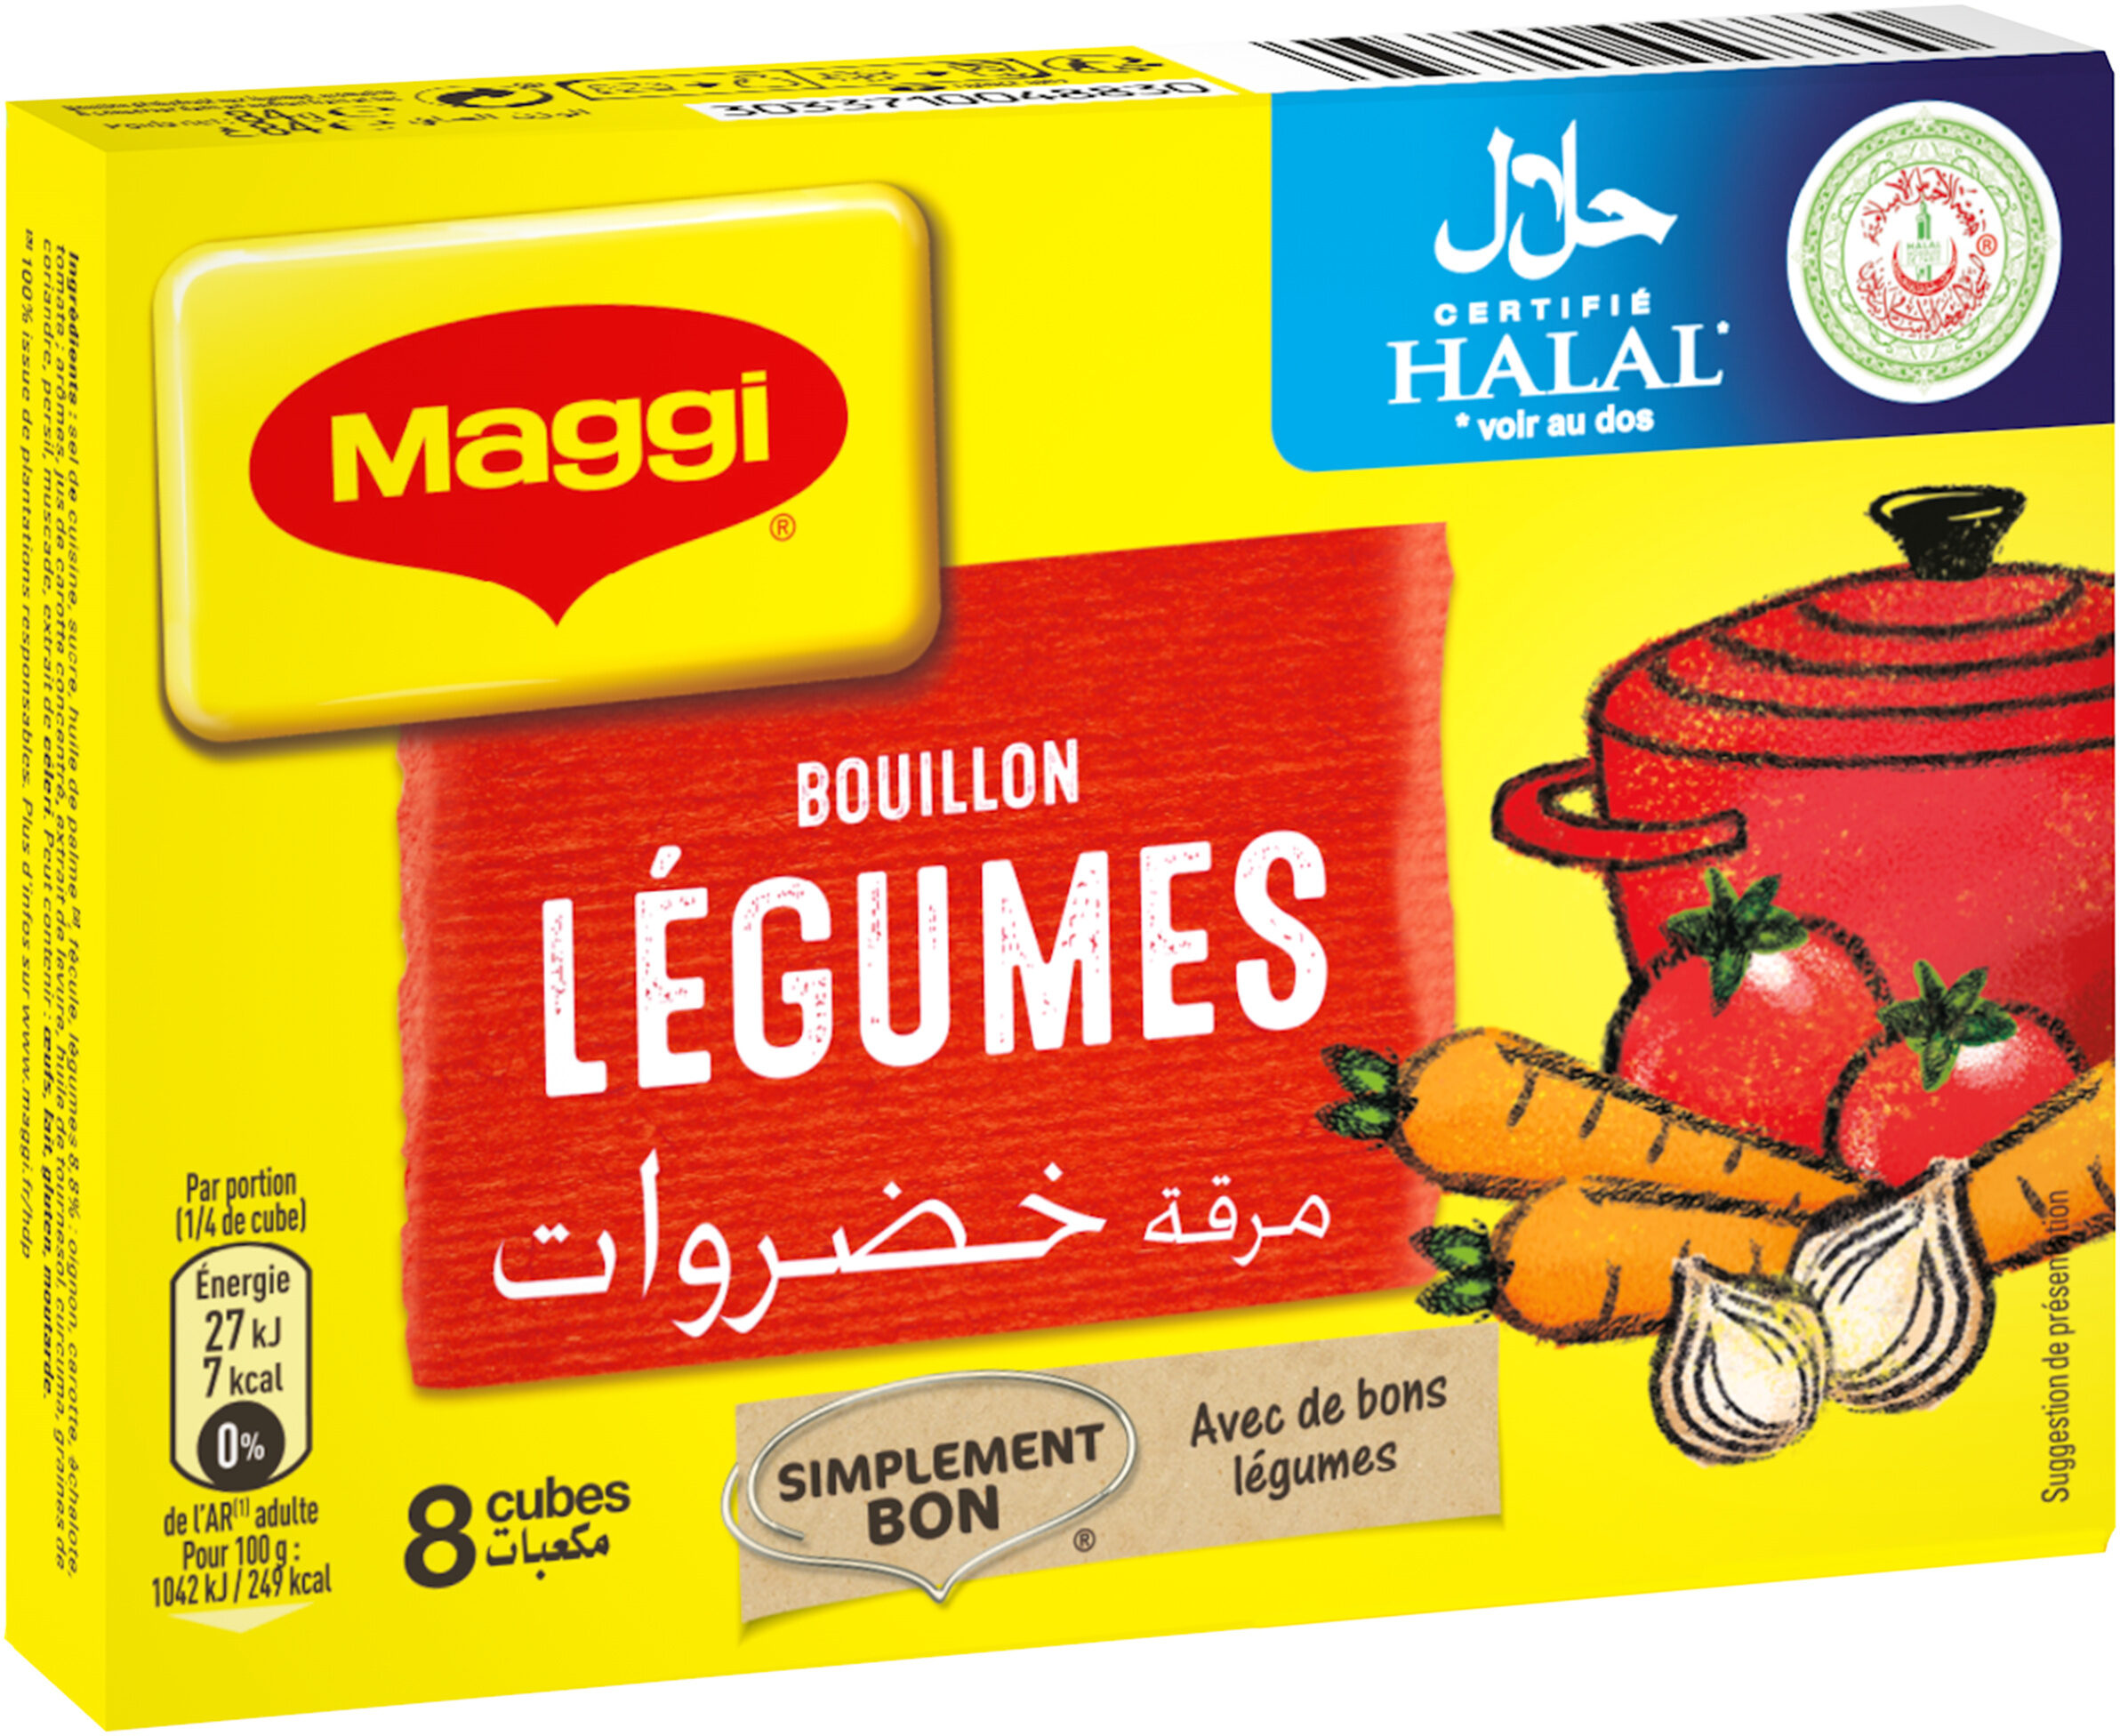 MAGGI Bouillon de Légumes Halal 8 tablettes, 84g - Produit